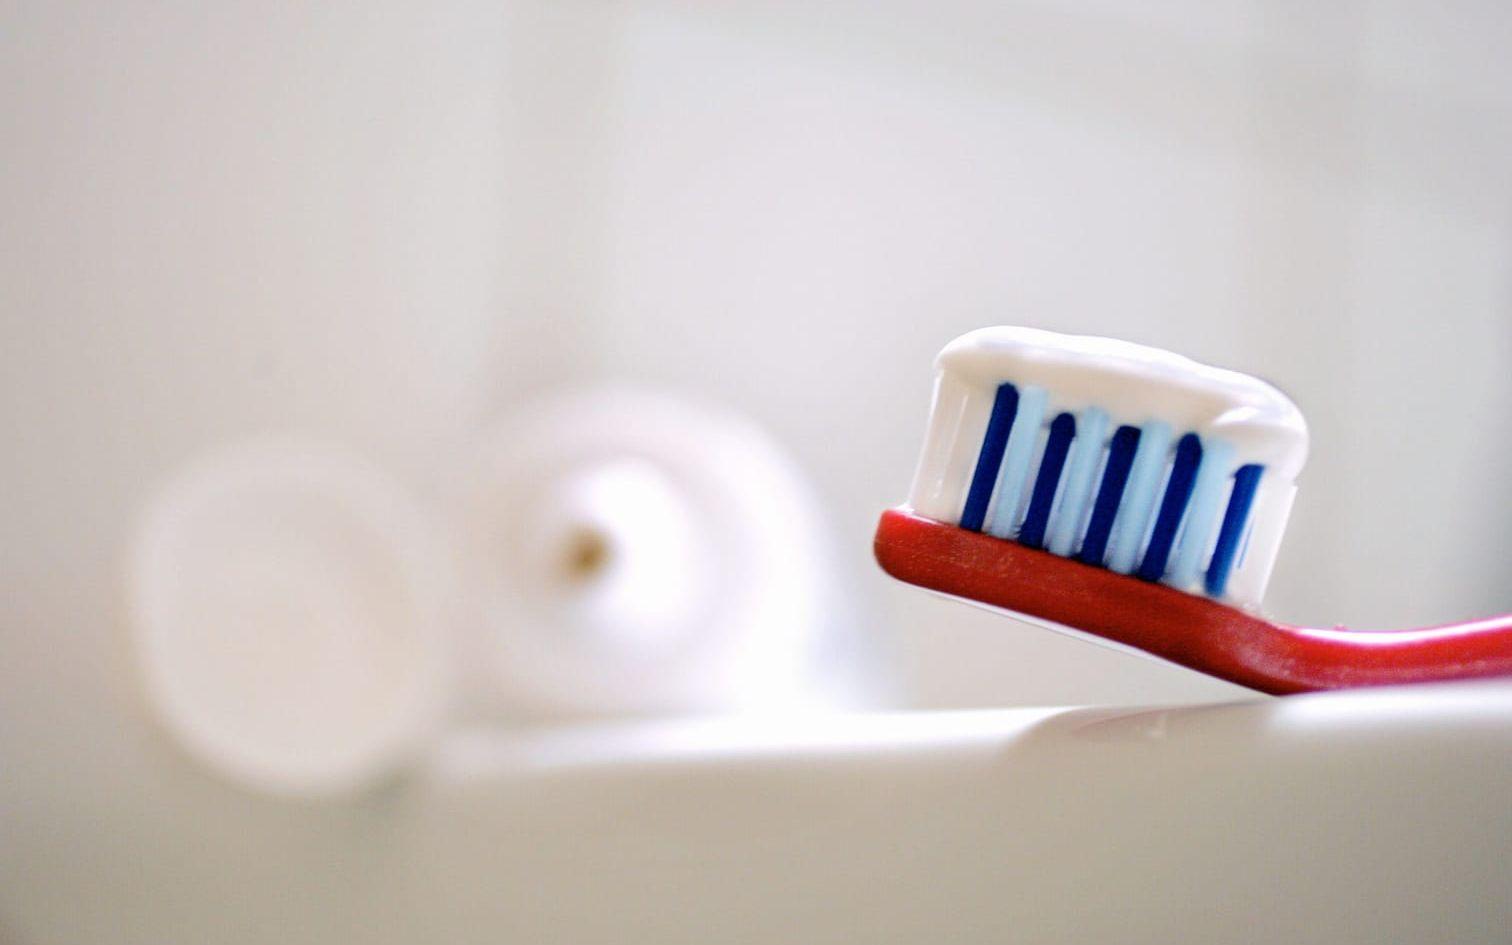 Spartips 6. Stäng av vattnet under tiden du borstar tänderna. Under tre minuters tandborstning kan 36 liter vatten sparas. Bild: HP, arkiv